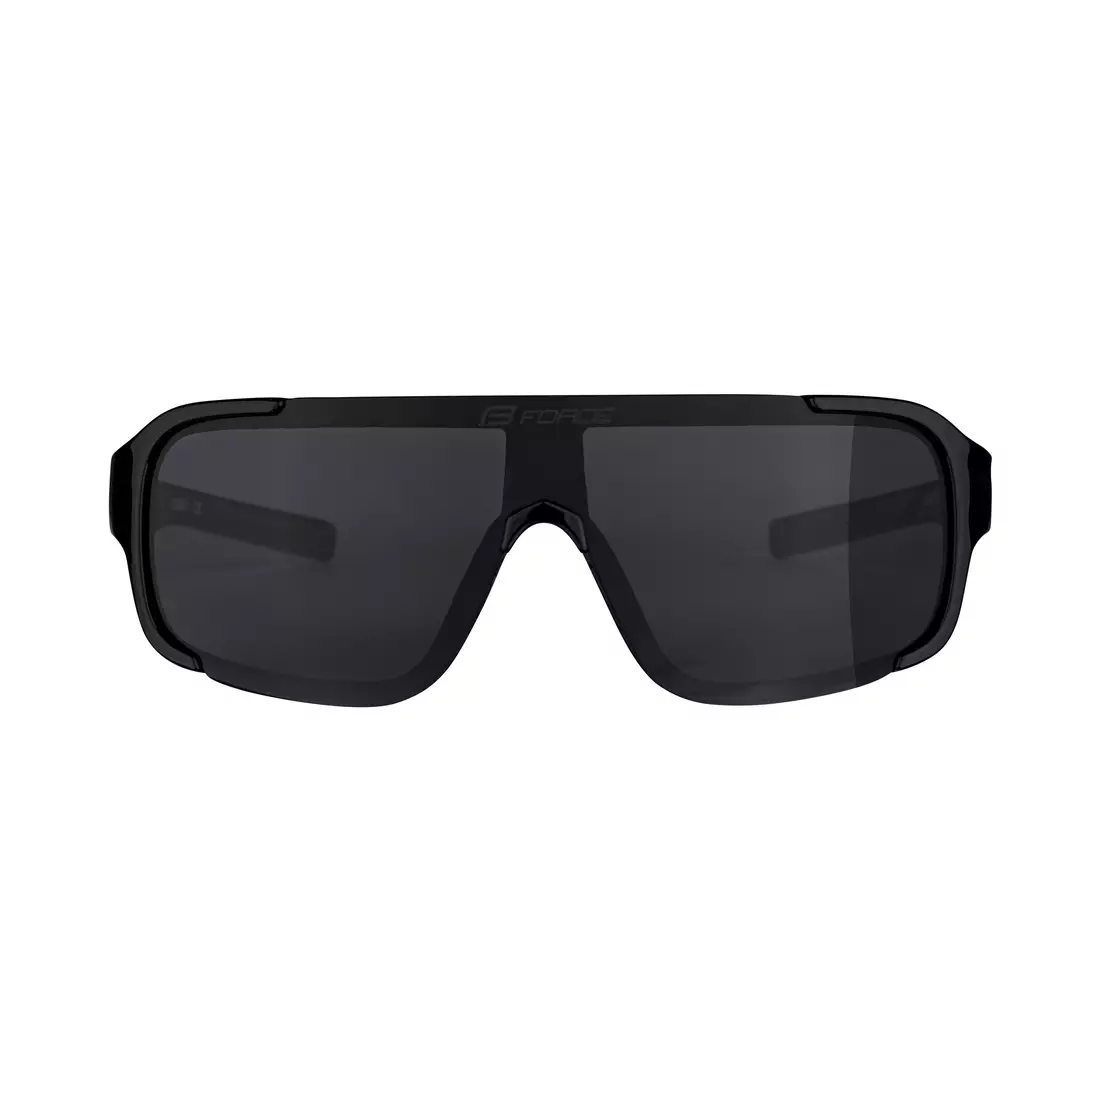 FORCE dámské sluneční brýle CHIC, černobílé, černé čočky 90961